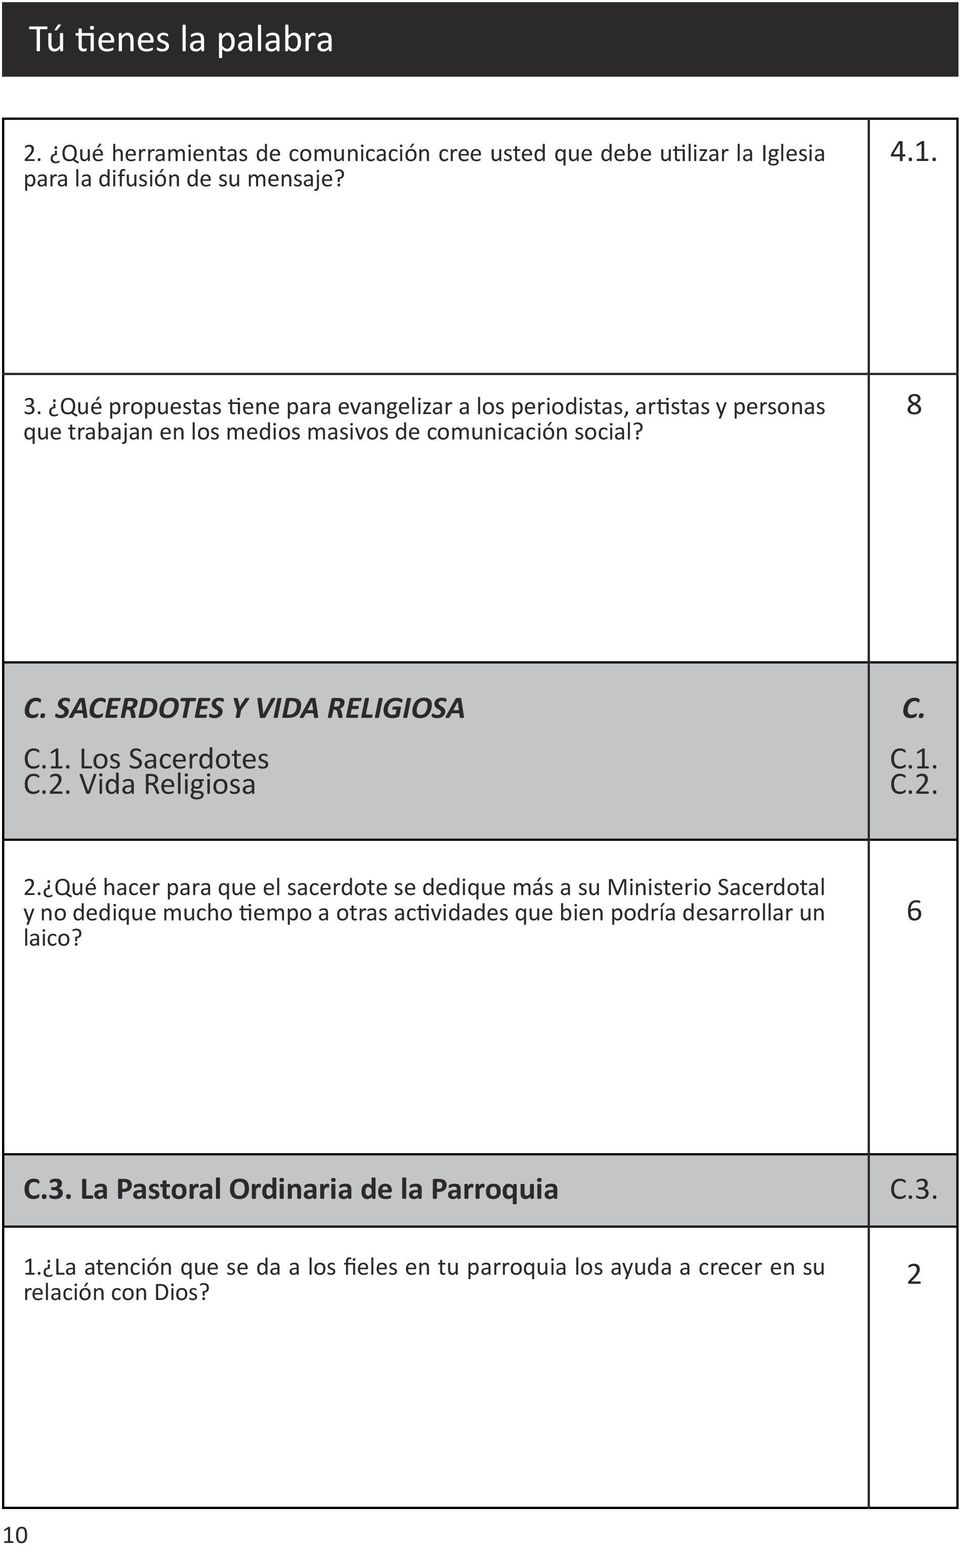 SACERDOTES Y VIDA RELIGIOSA C.1. Los Sacerdotes C.2. Vida Religiosa C. C.1. C.2. 2.